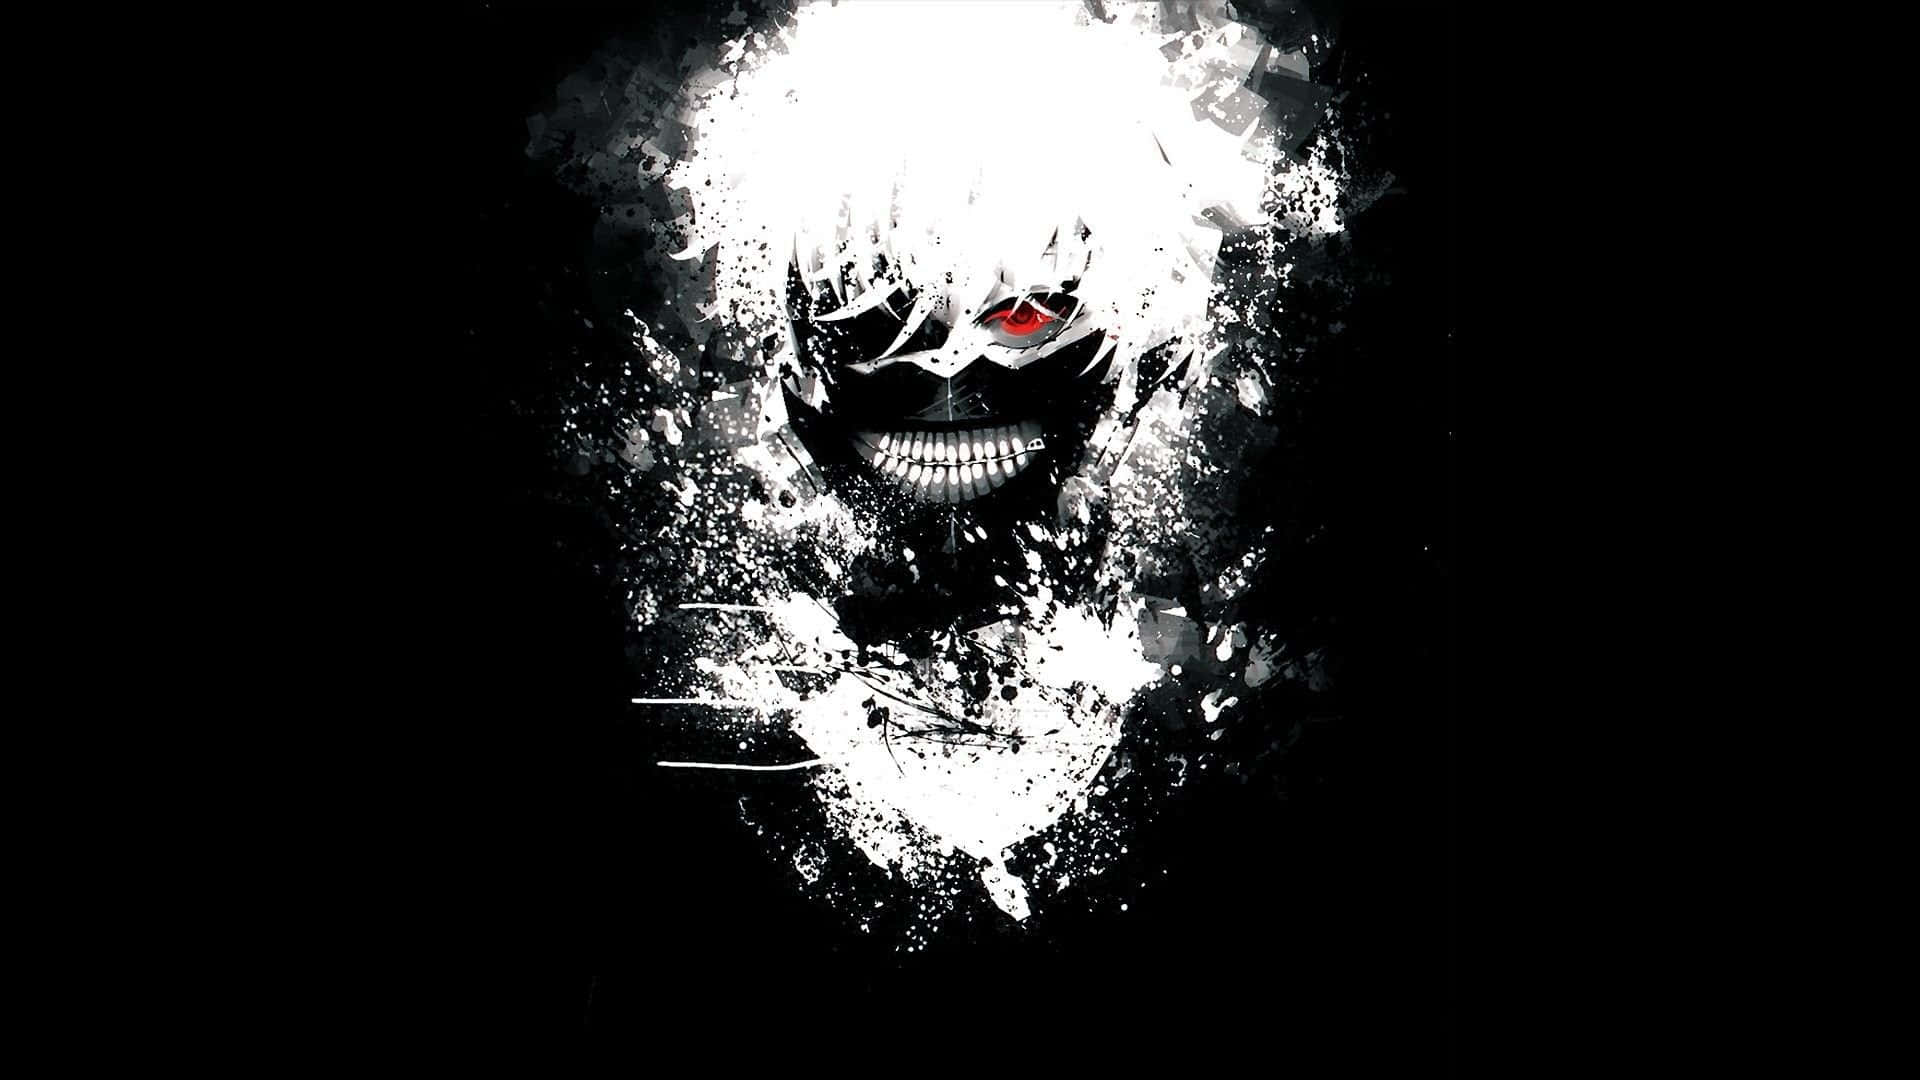 Dark Anime Background Online - www.puzzlewood.net 1695985243